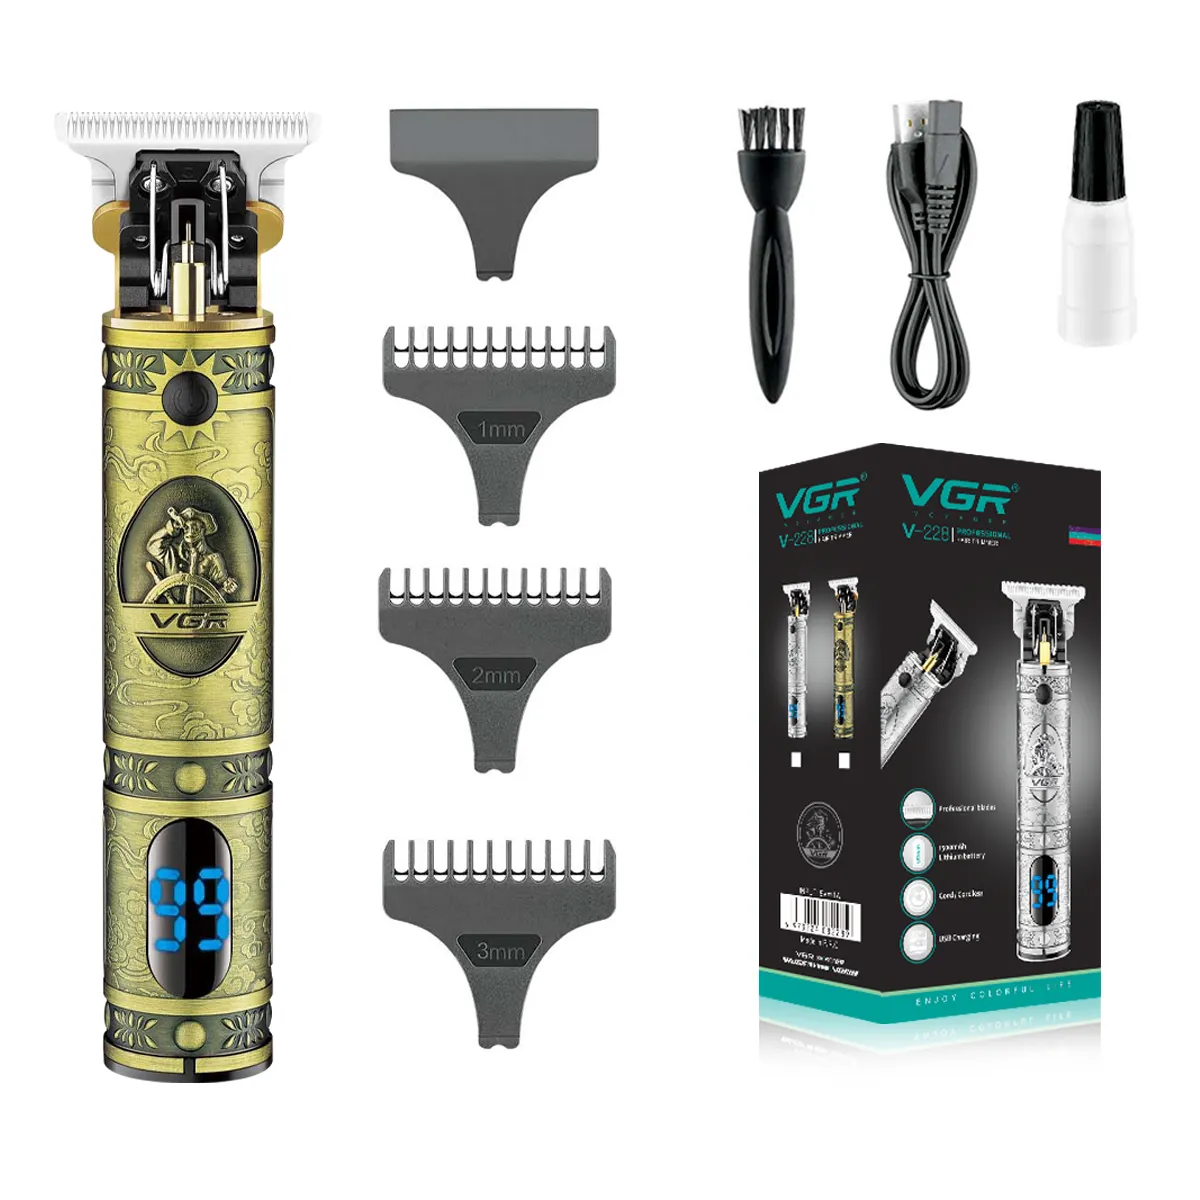 VGR V-228 metal carving desgin hair cut machine beard trimmer hair clipper professional electric hair trimmer cordless for men